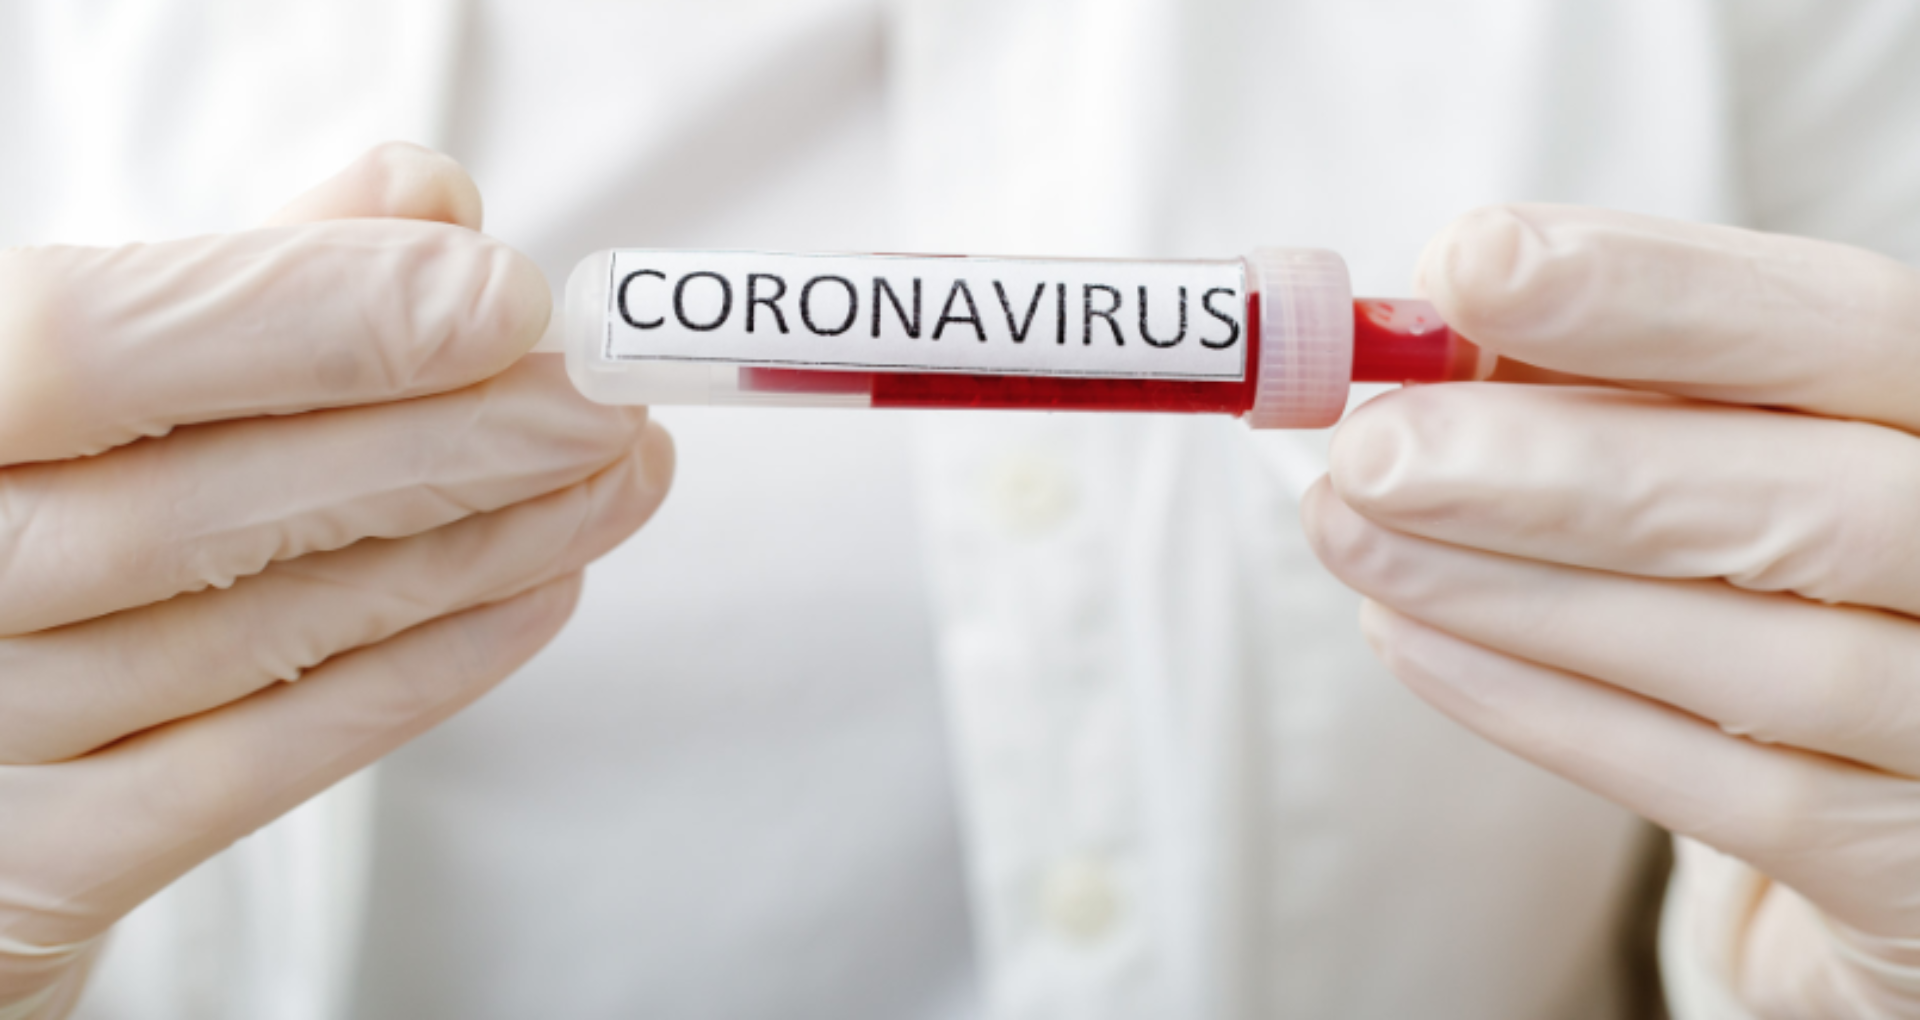 Poţi omorî virusul cu usturoi, antibiotice sau dacă îţi faci baie cu alcool? OMS demontează miturile despre coronavirus. Informațiile false care circulă online